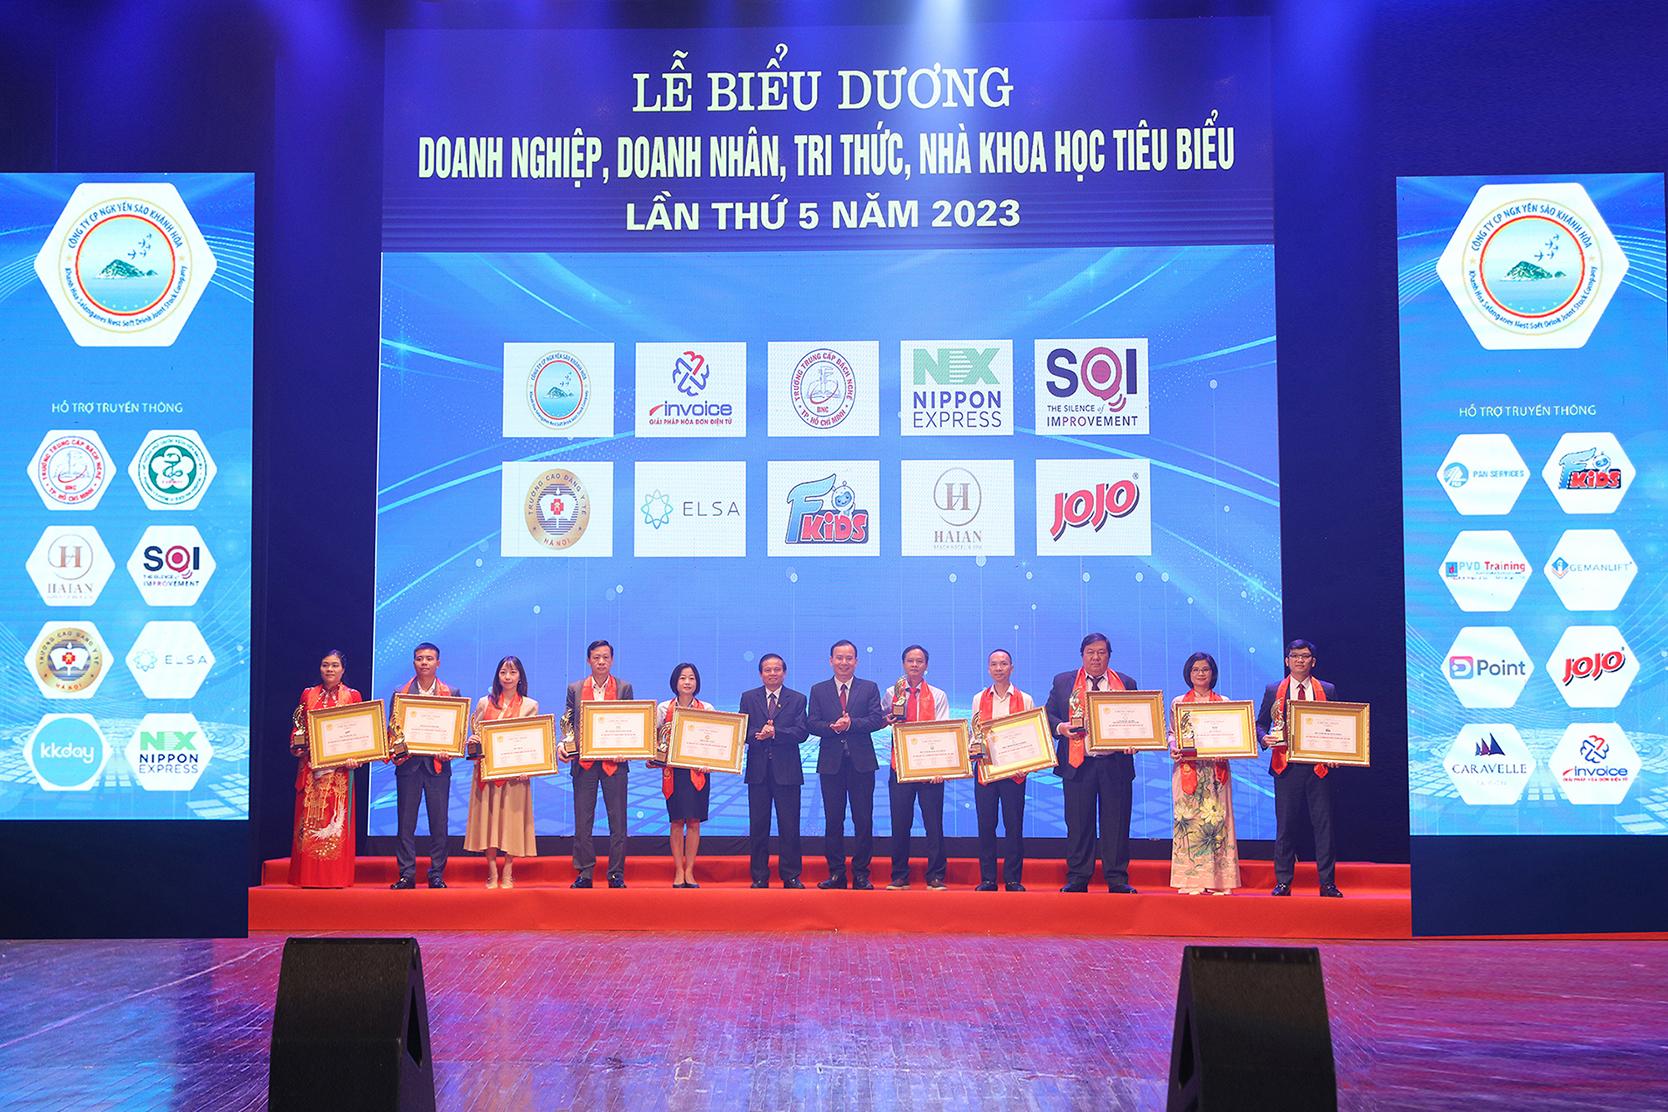 Lễ biểu dương doanh nghiệp, doanh nhân, trí thức tiêu biểu Việt Nam 2023